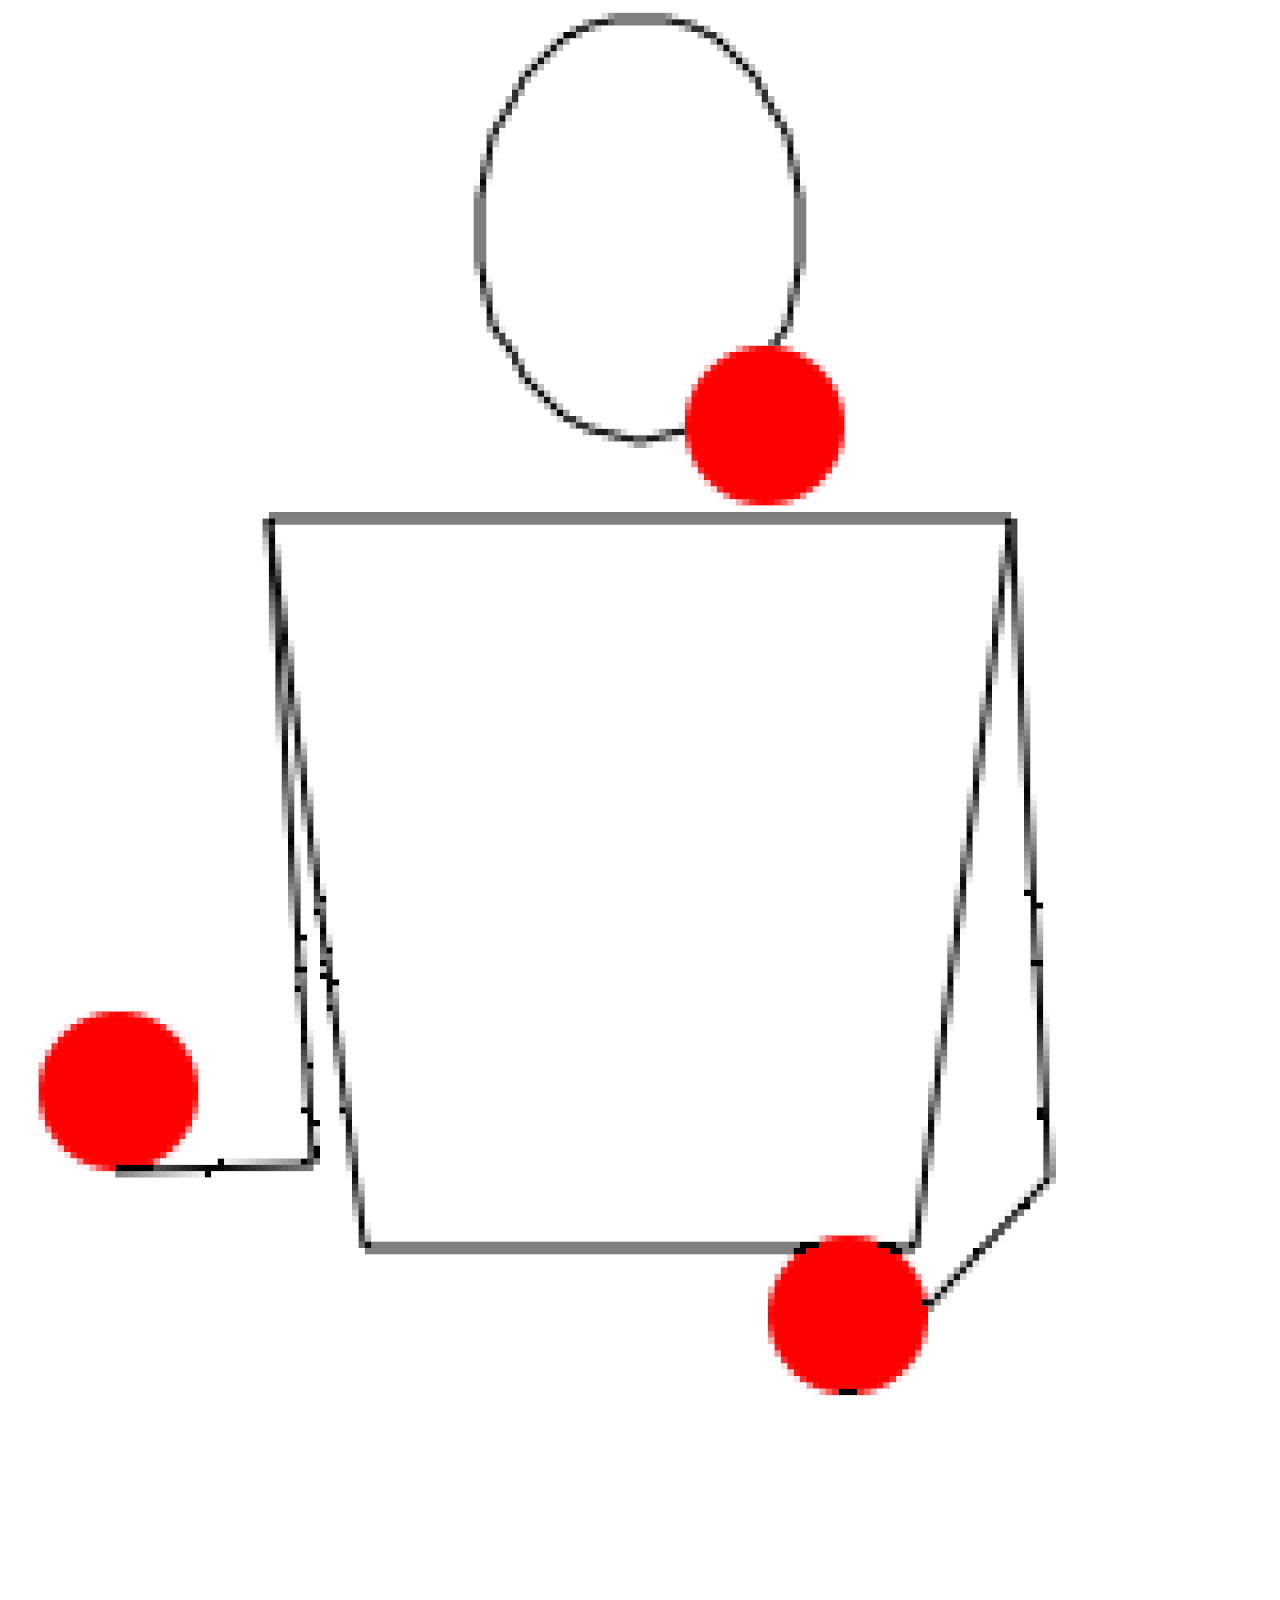 Жонглирование 3 мячами. Техника жонглирования 2 мячами. Схема жонглирования 3. Жонглирование 3 мячами Каскад. Как научиться жонглировать тремя мячами.